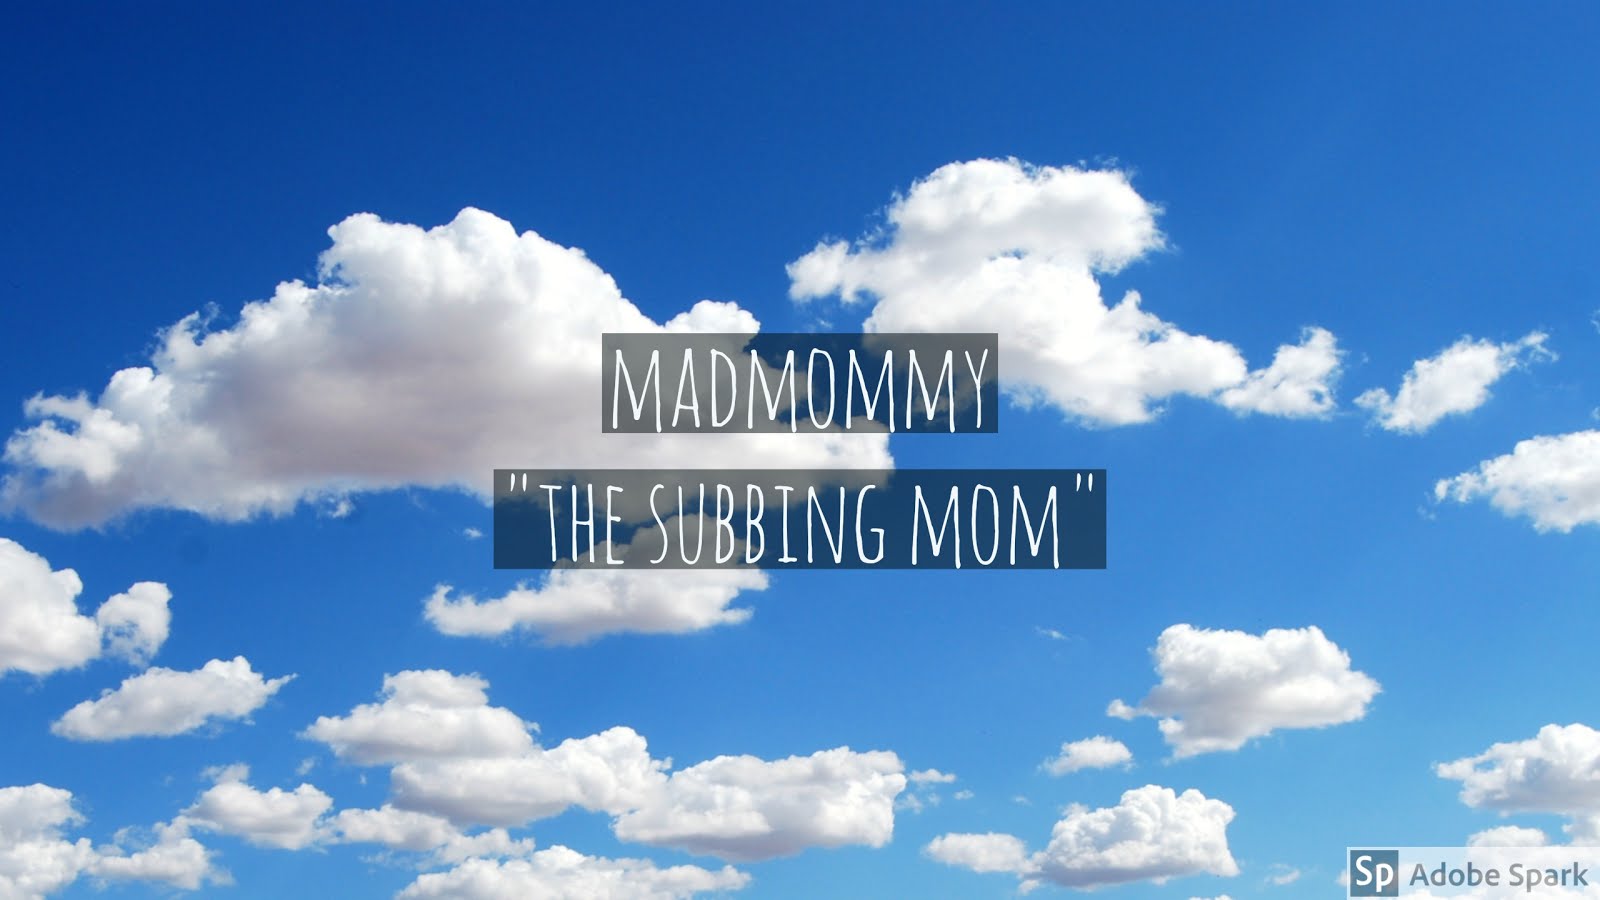 The Subbing Mom